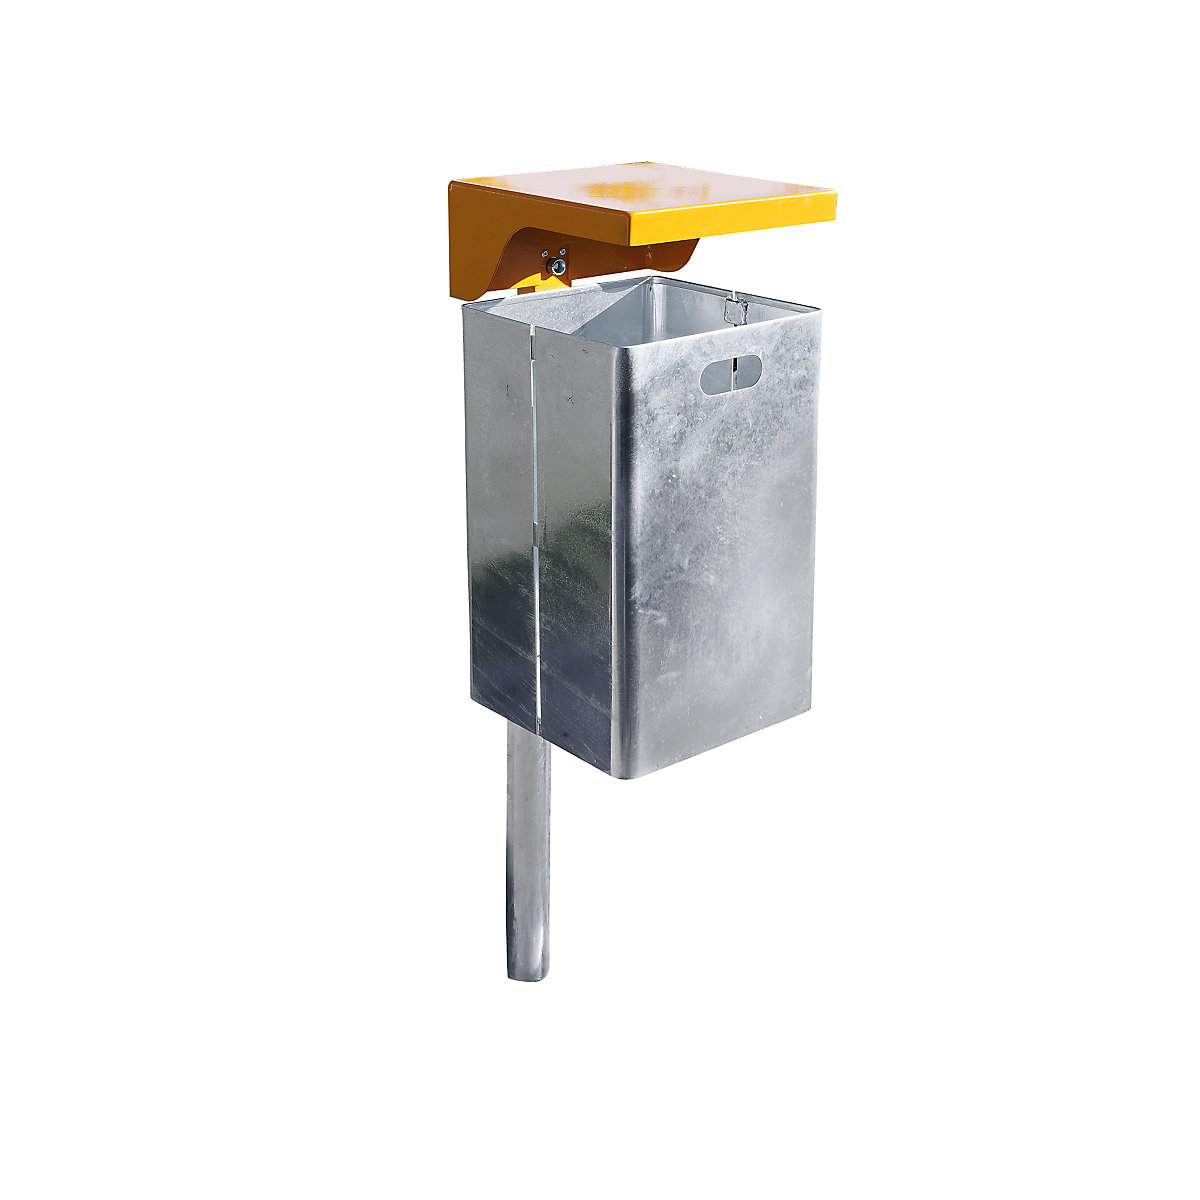 Abfallbehälter für außen, feuerverzinkt, Volumen 40 l, BxHxT 310 x 600 x 360 mm, Haube orange-3